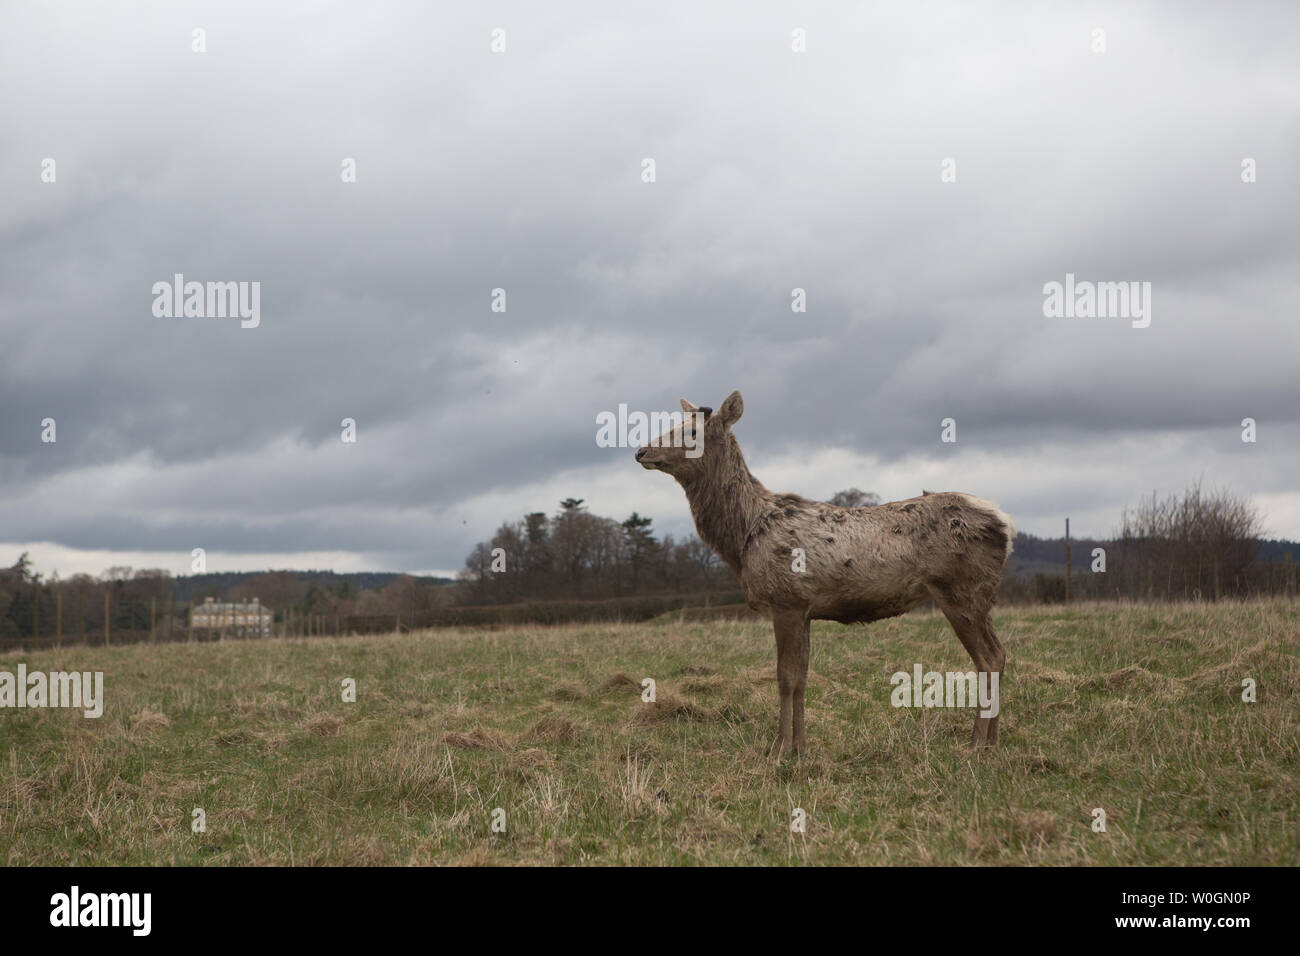 Red deer (Cervus elaphus) at the The Scottish Deer Centre, Bow of Fife, Cupar, Scotland. Stock Photo